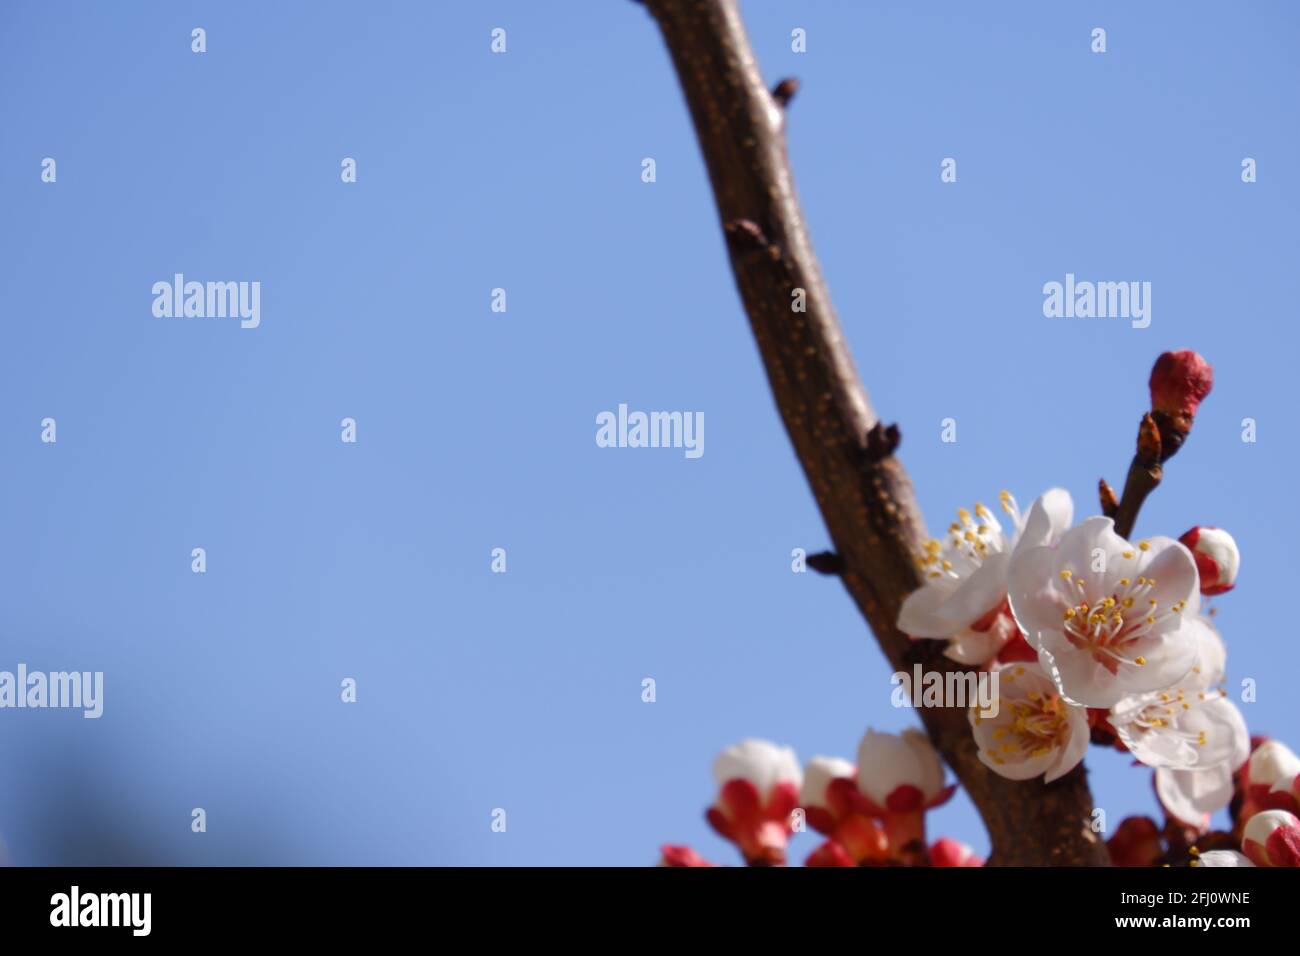 Fiori bianchi di albicocca che fioriscono in primavera Foto Stock